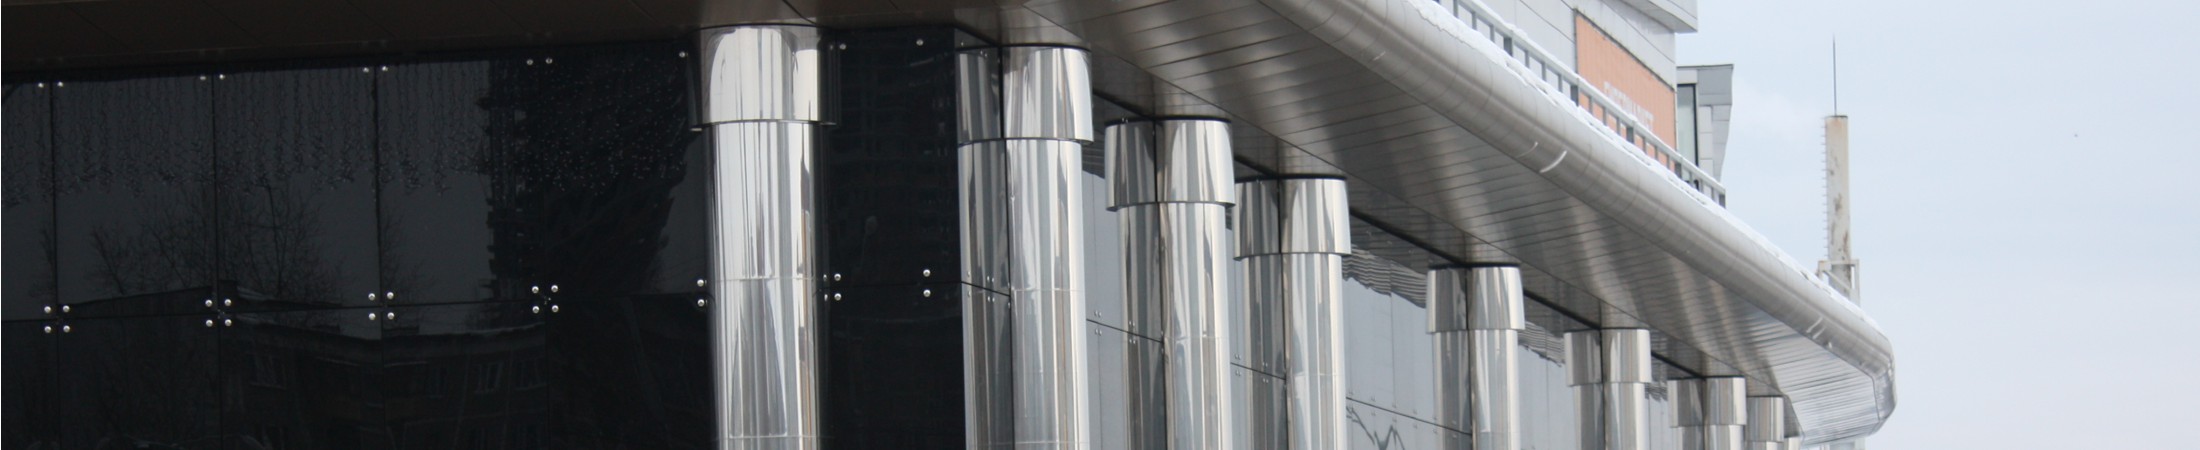 ТРЦ «Глобус» – фасадные колонны